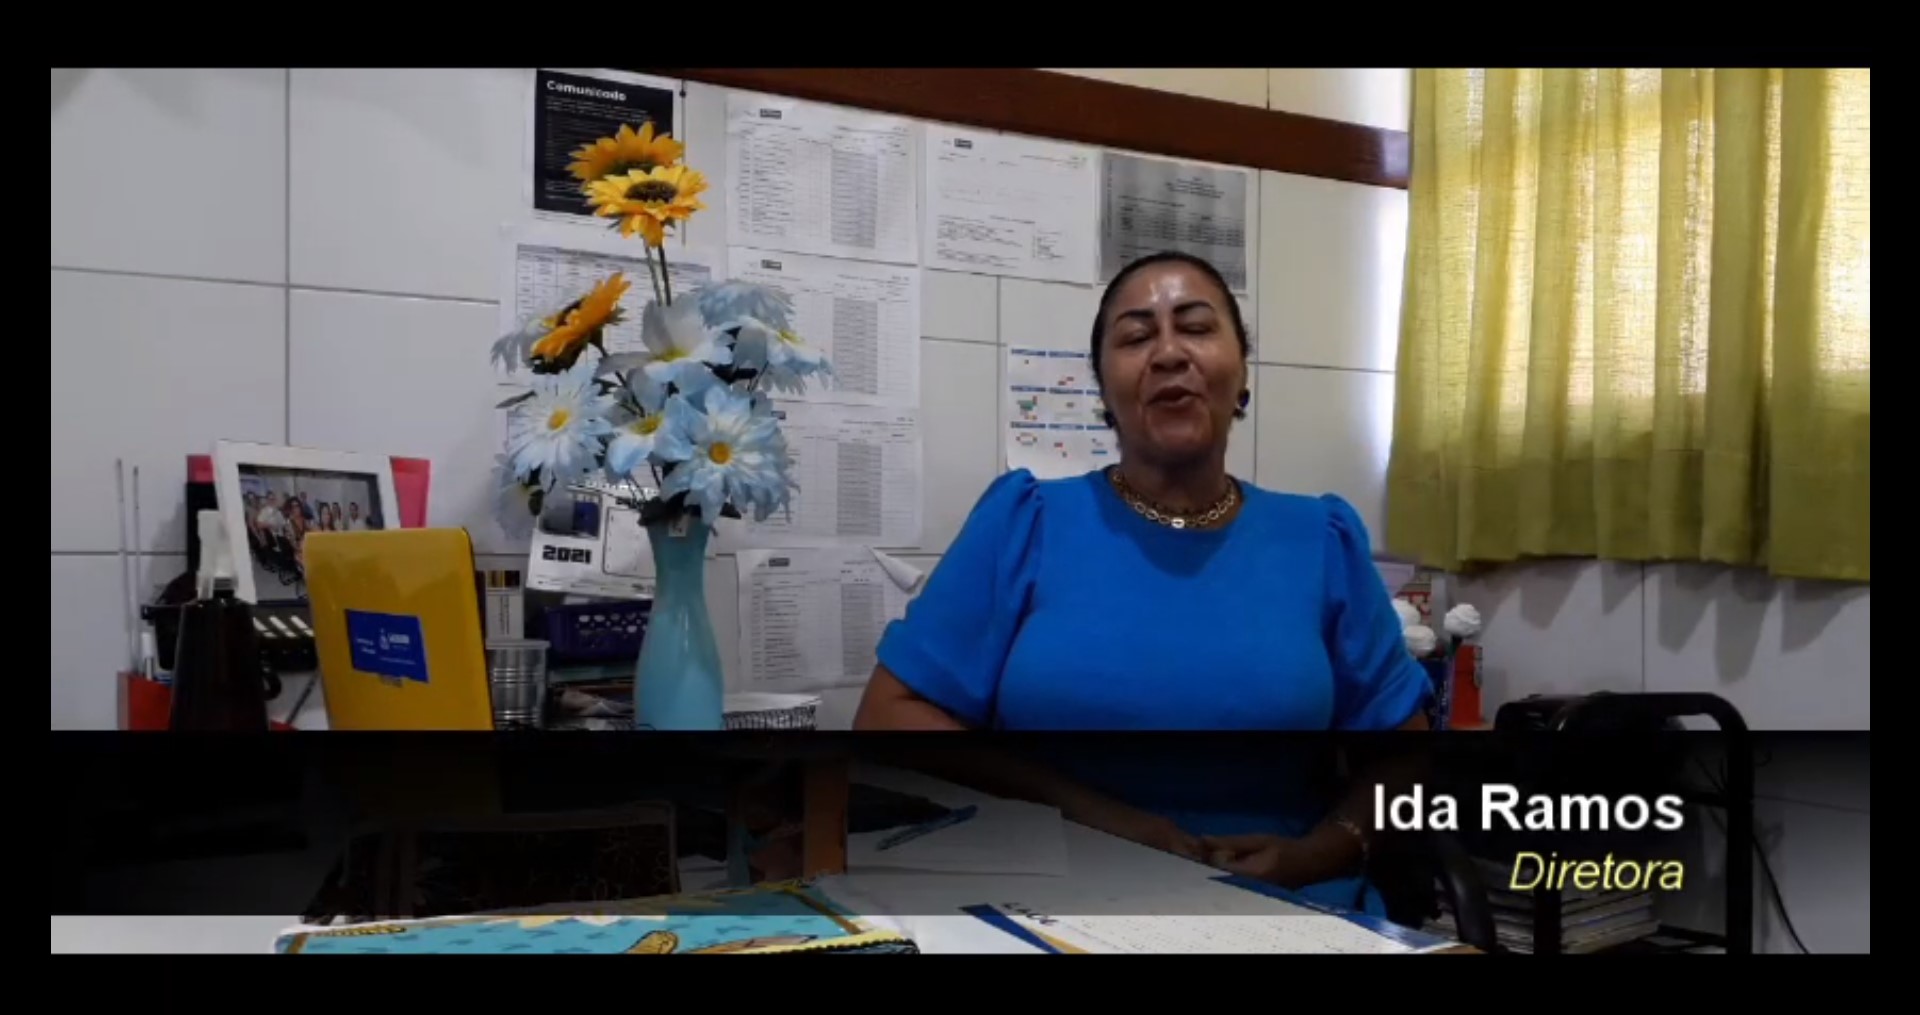 Escola no Garcia cria canal no YouTube para divulgar ações pedagógicas